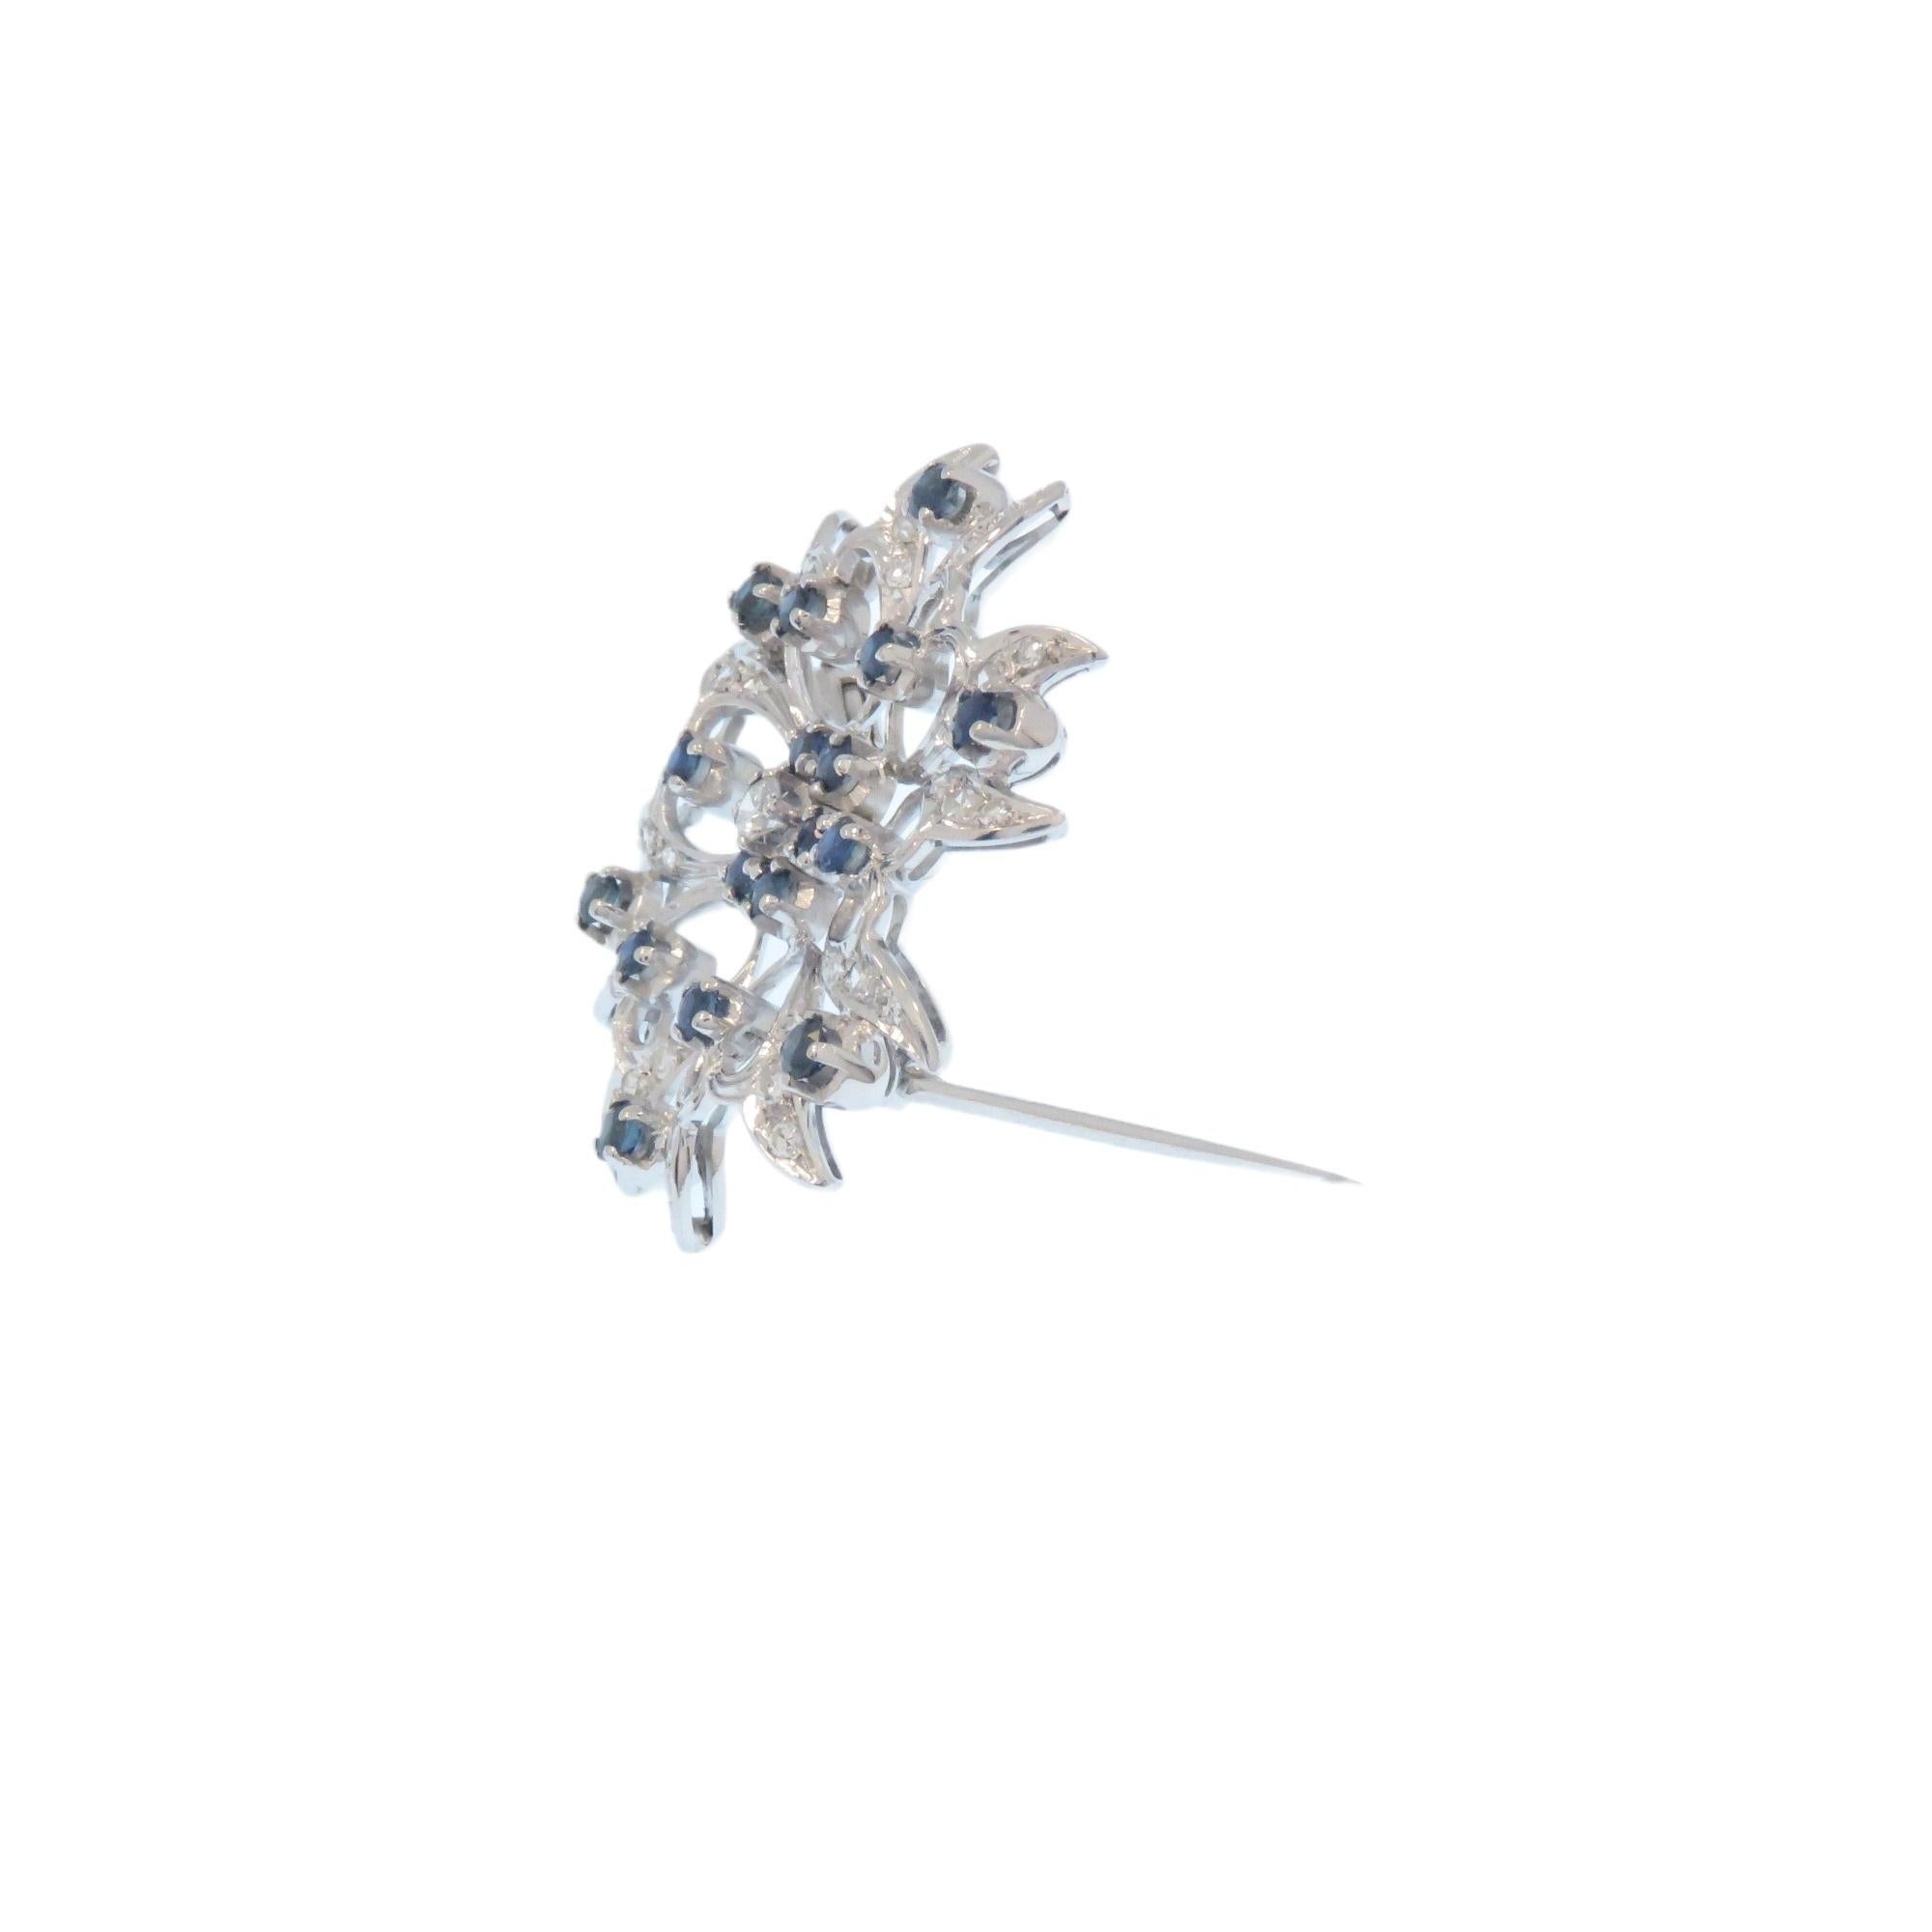 Jolie broche en or blanc 18 carats avec diamants et saphirs bleus, datant de 1960.
37 diamants taille brillant d'environ 0,80 ctw et 18 saphirs bleus taille brillant d'environ 0,90 ctw. Cette belle broche est fixée au dos par une épingle à charnière